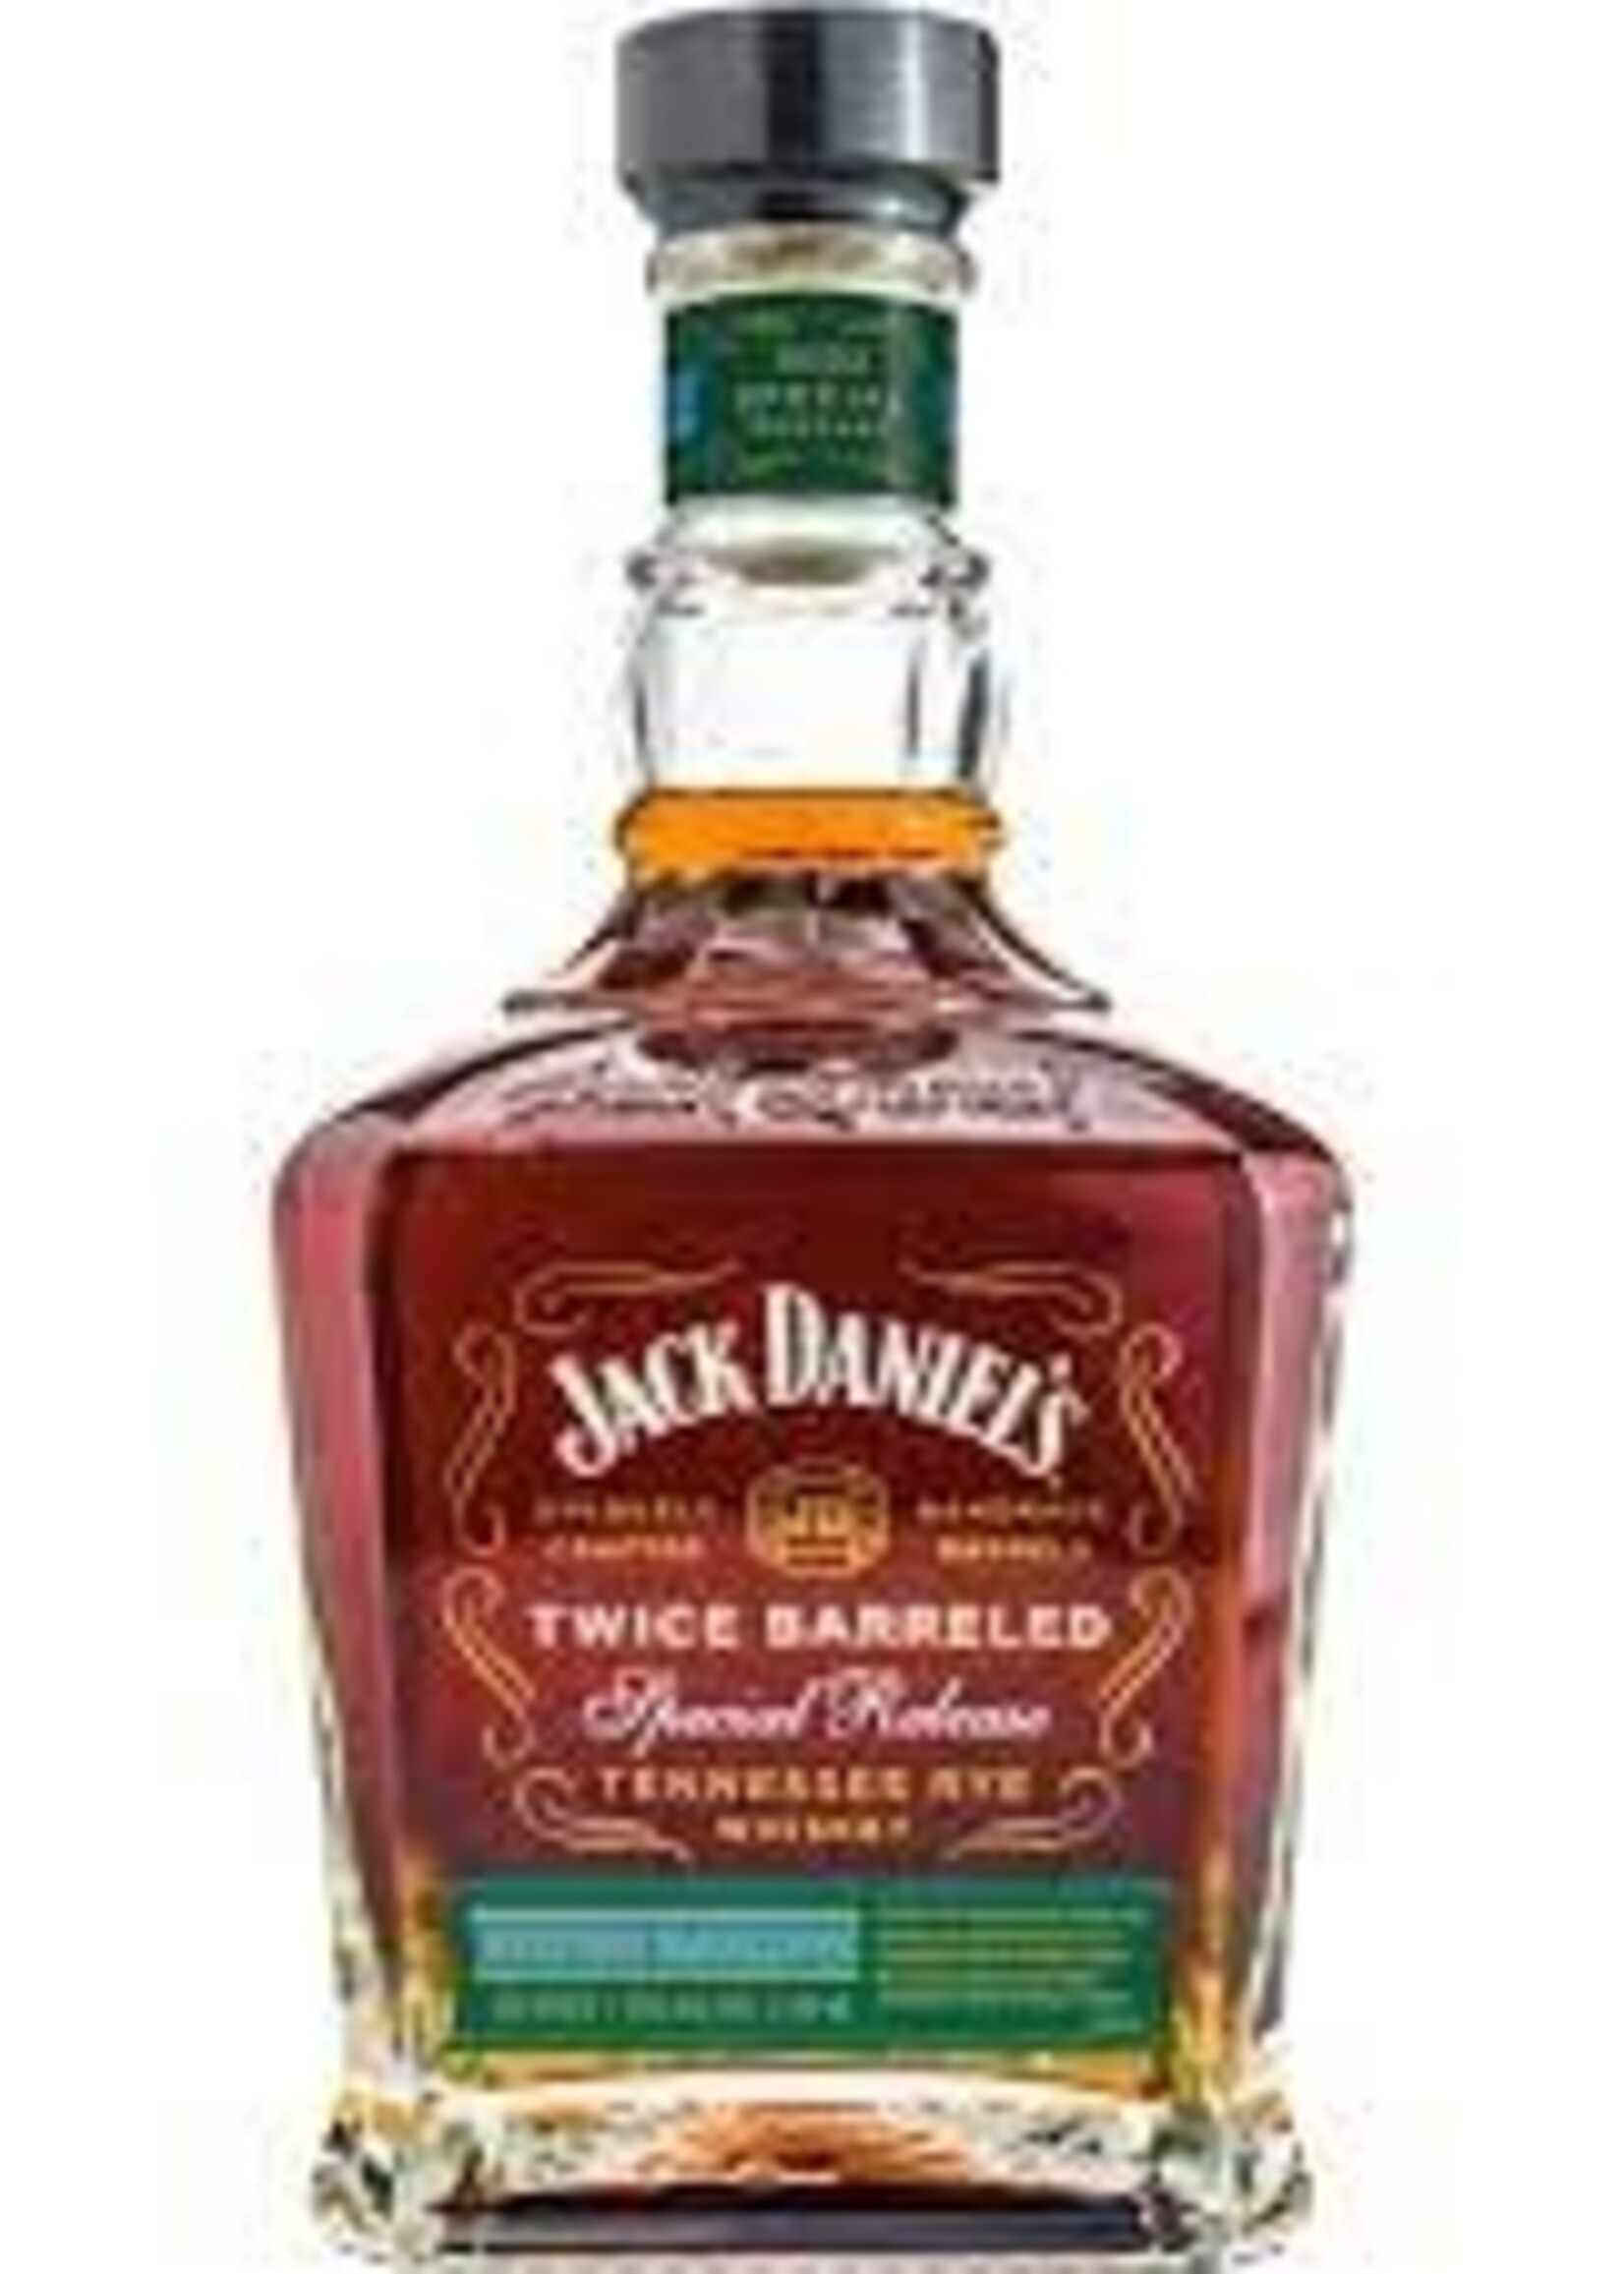 Jack Daniel's Jack Daniels Heritage Barrel Rye "Twice Barreled" 2023 Special Release 750ML